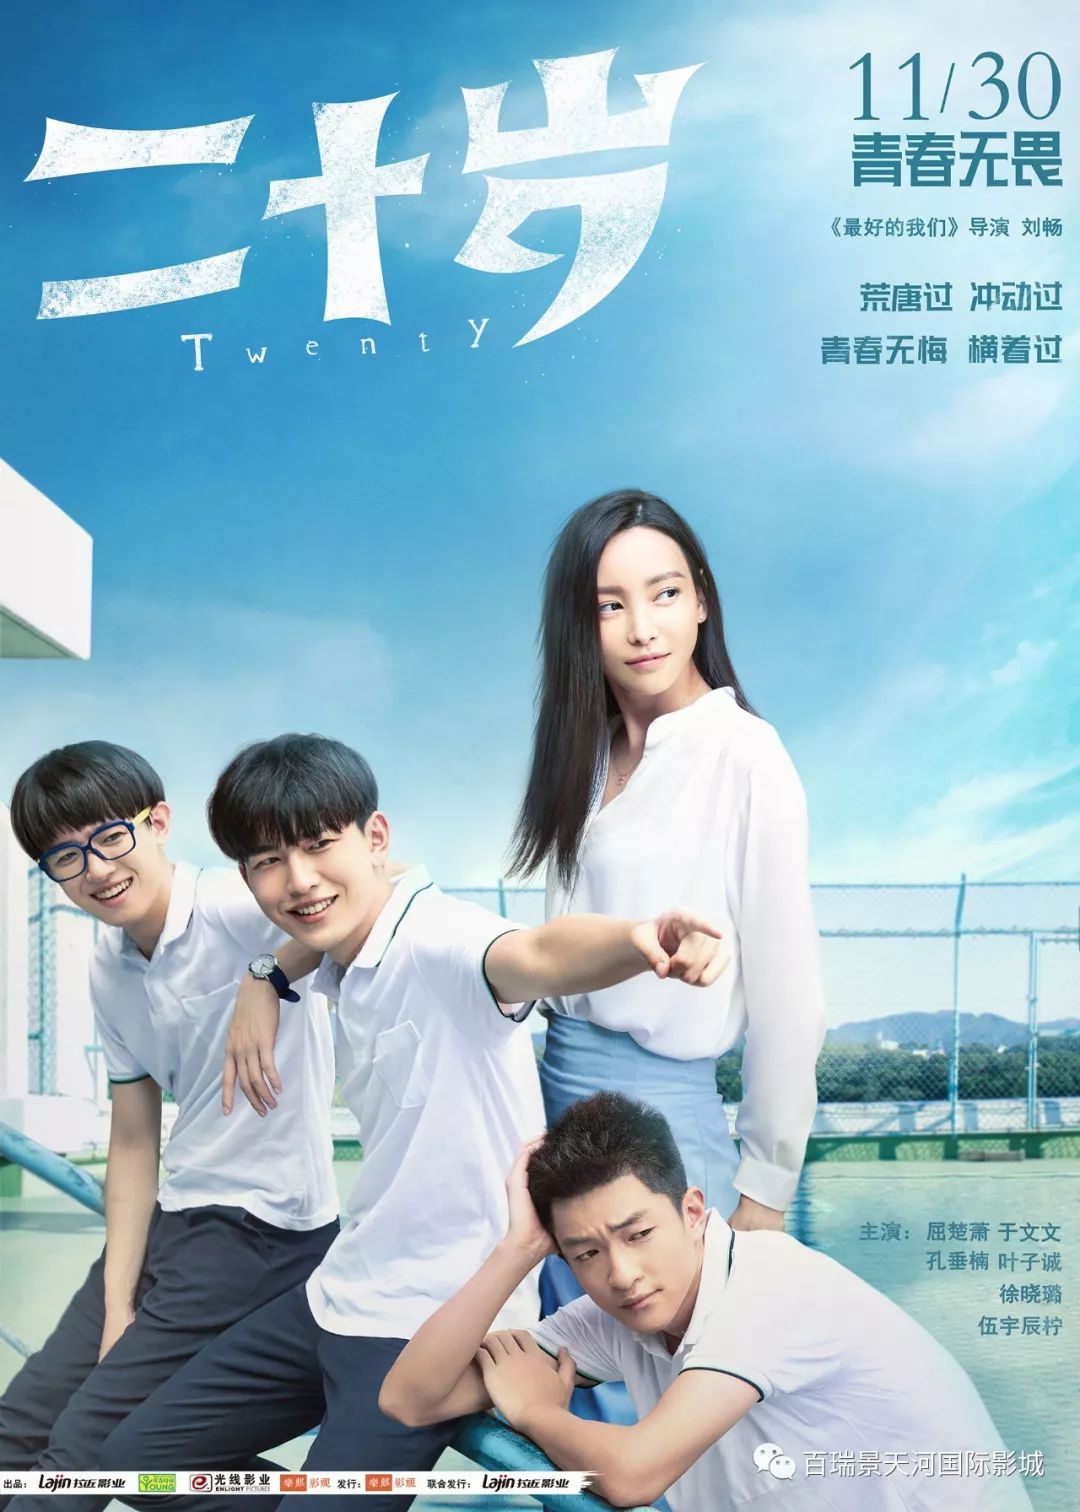 《二十岁》根据韩国现象级卖座青春电影改编,由经典青春剧《最好的